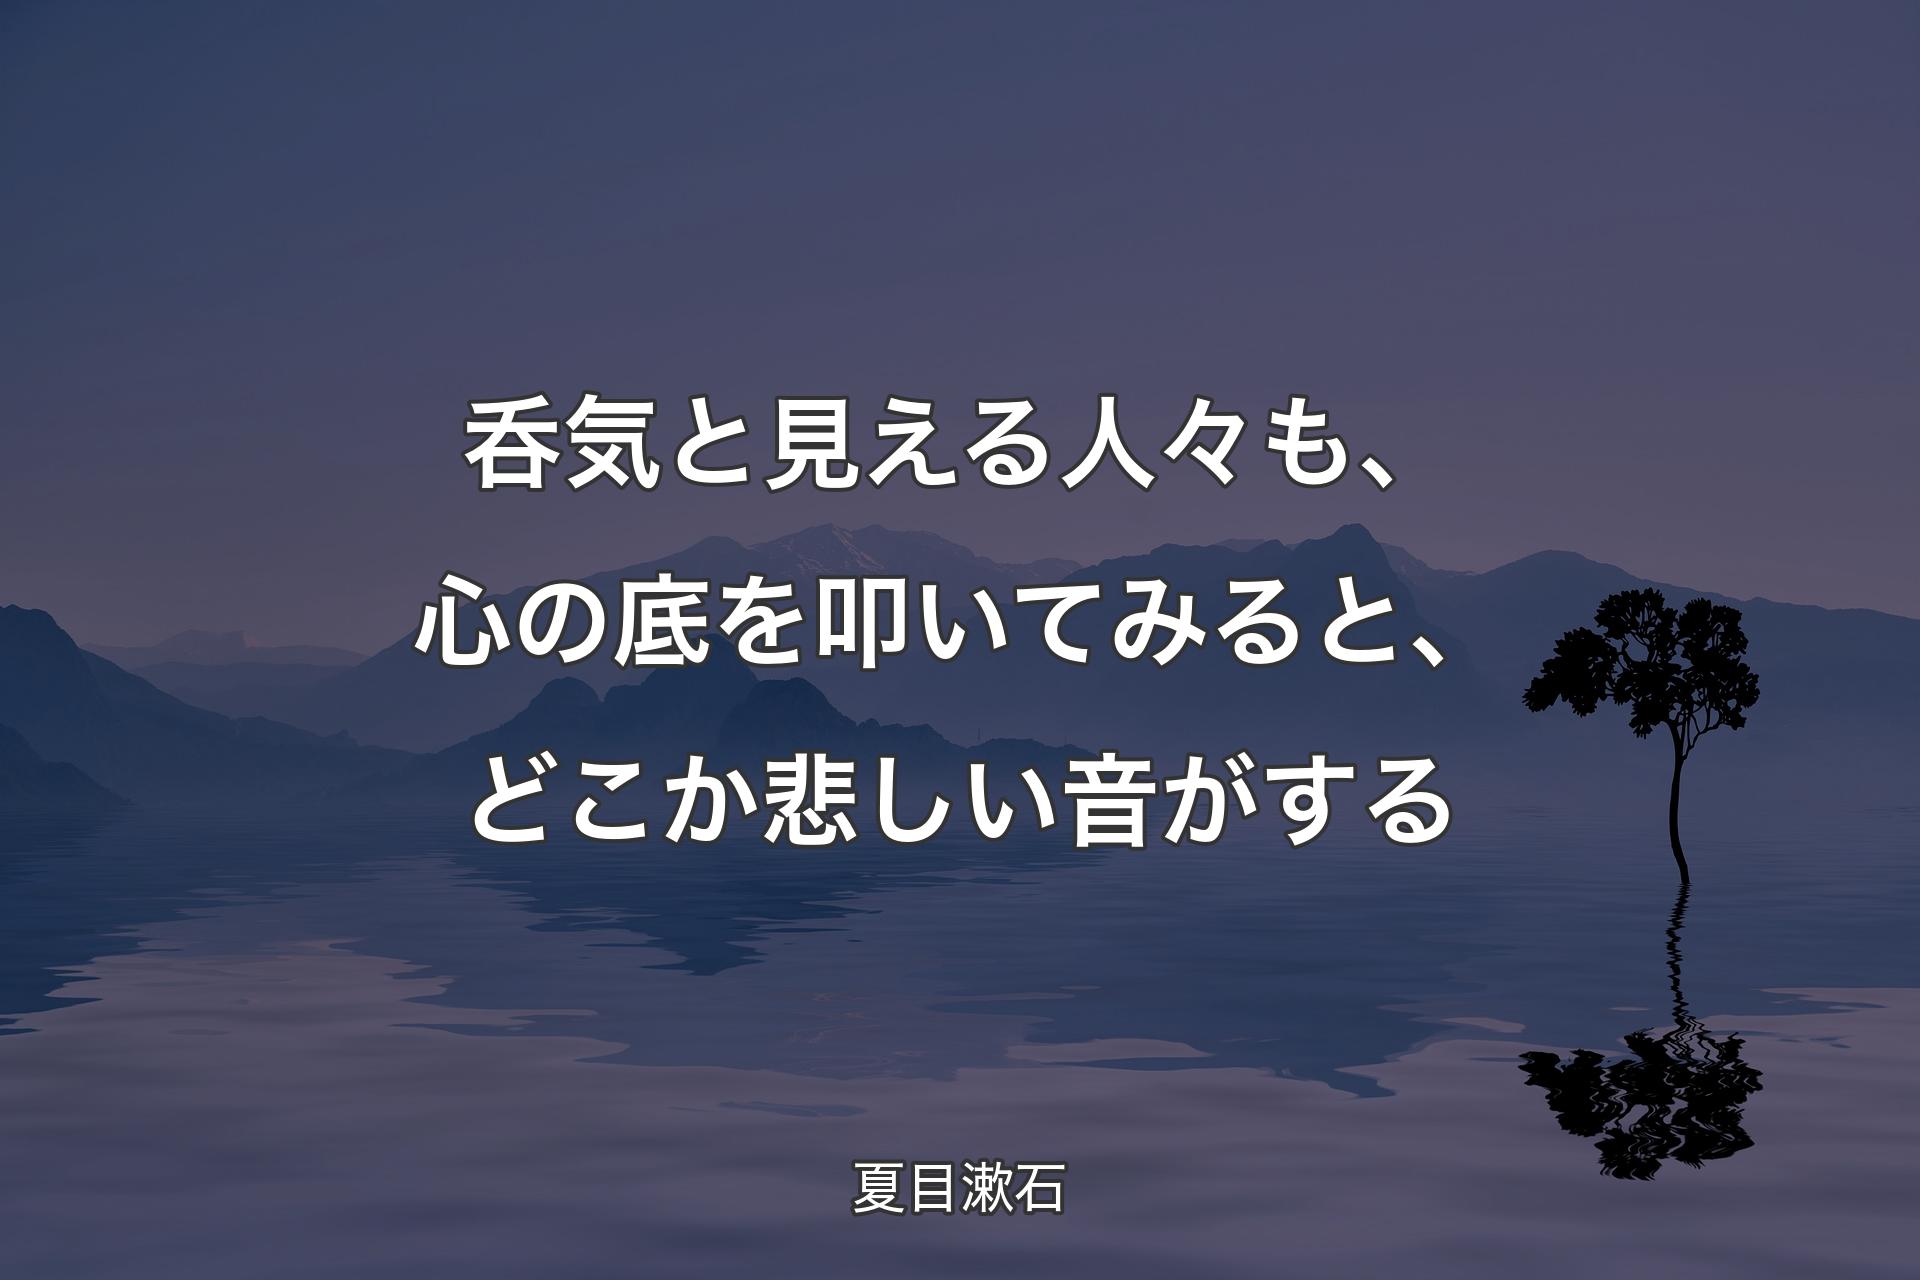 【背景4】呑気と見える人々も、心の底を叩いてみると、どこか悲しい音がする - 夏目漱石